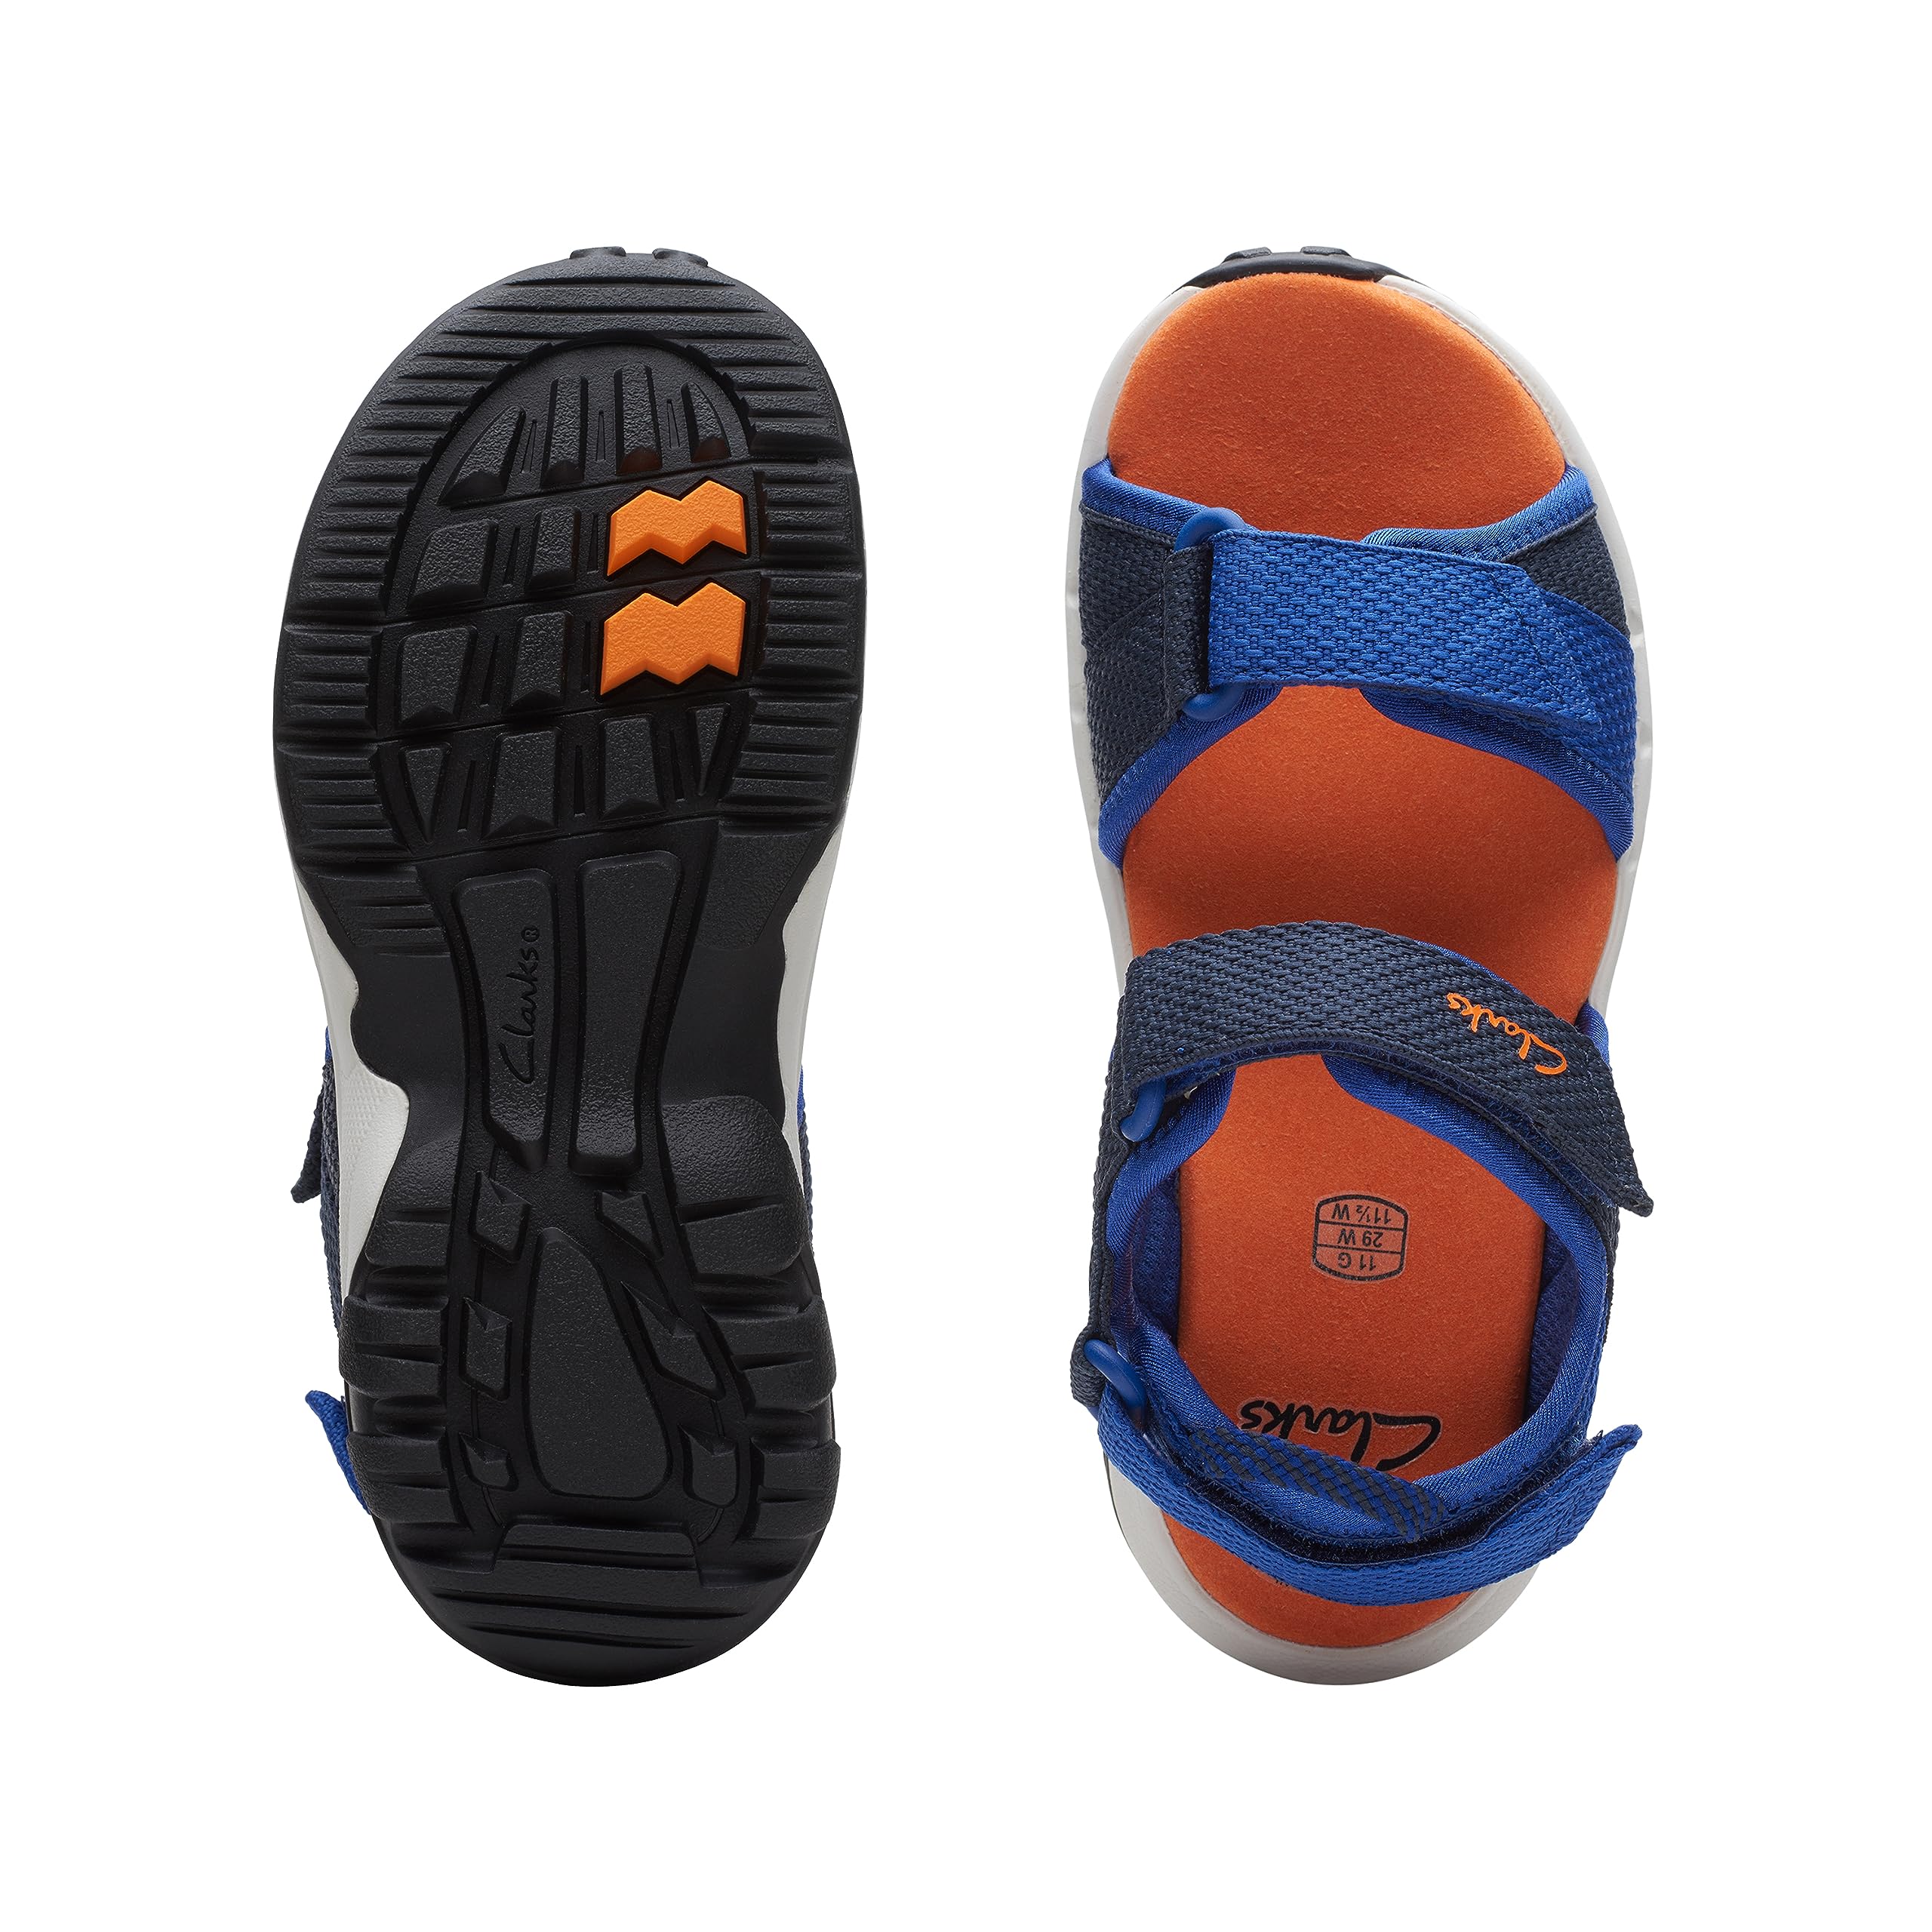 Clarks Unisex-Child Expo Sea K Sport Sandal